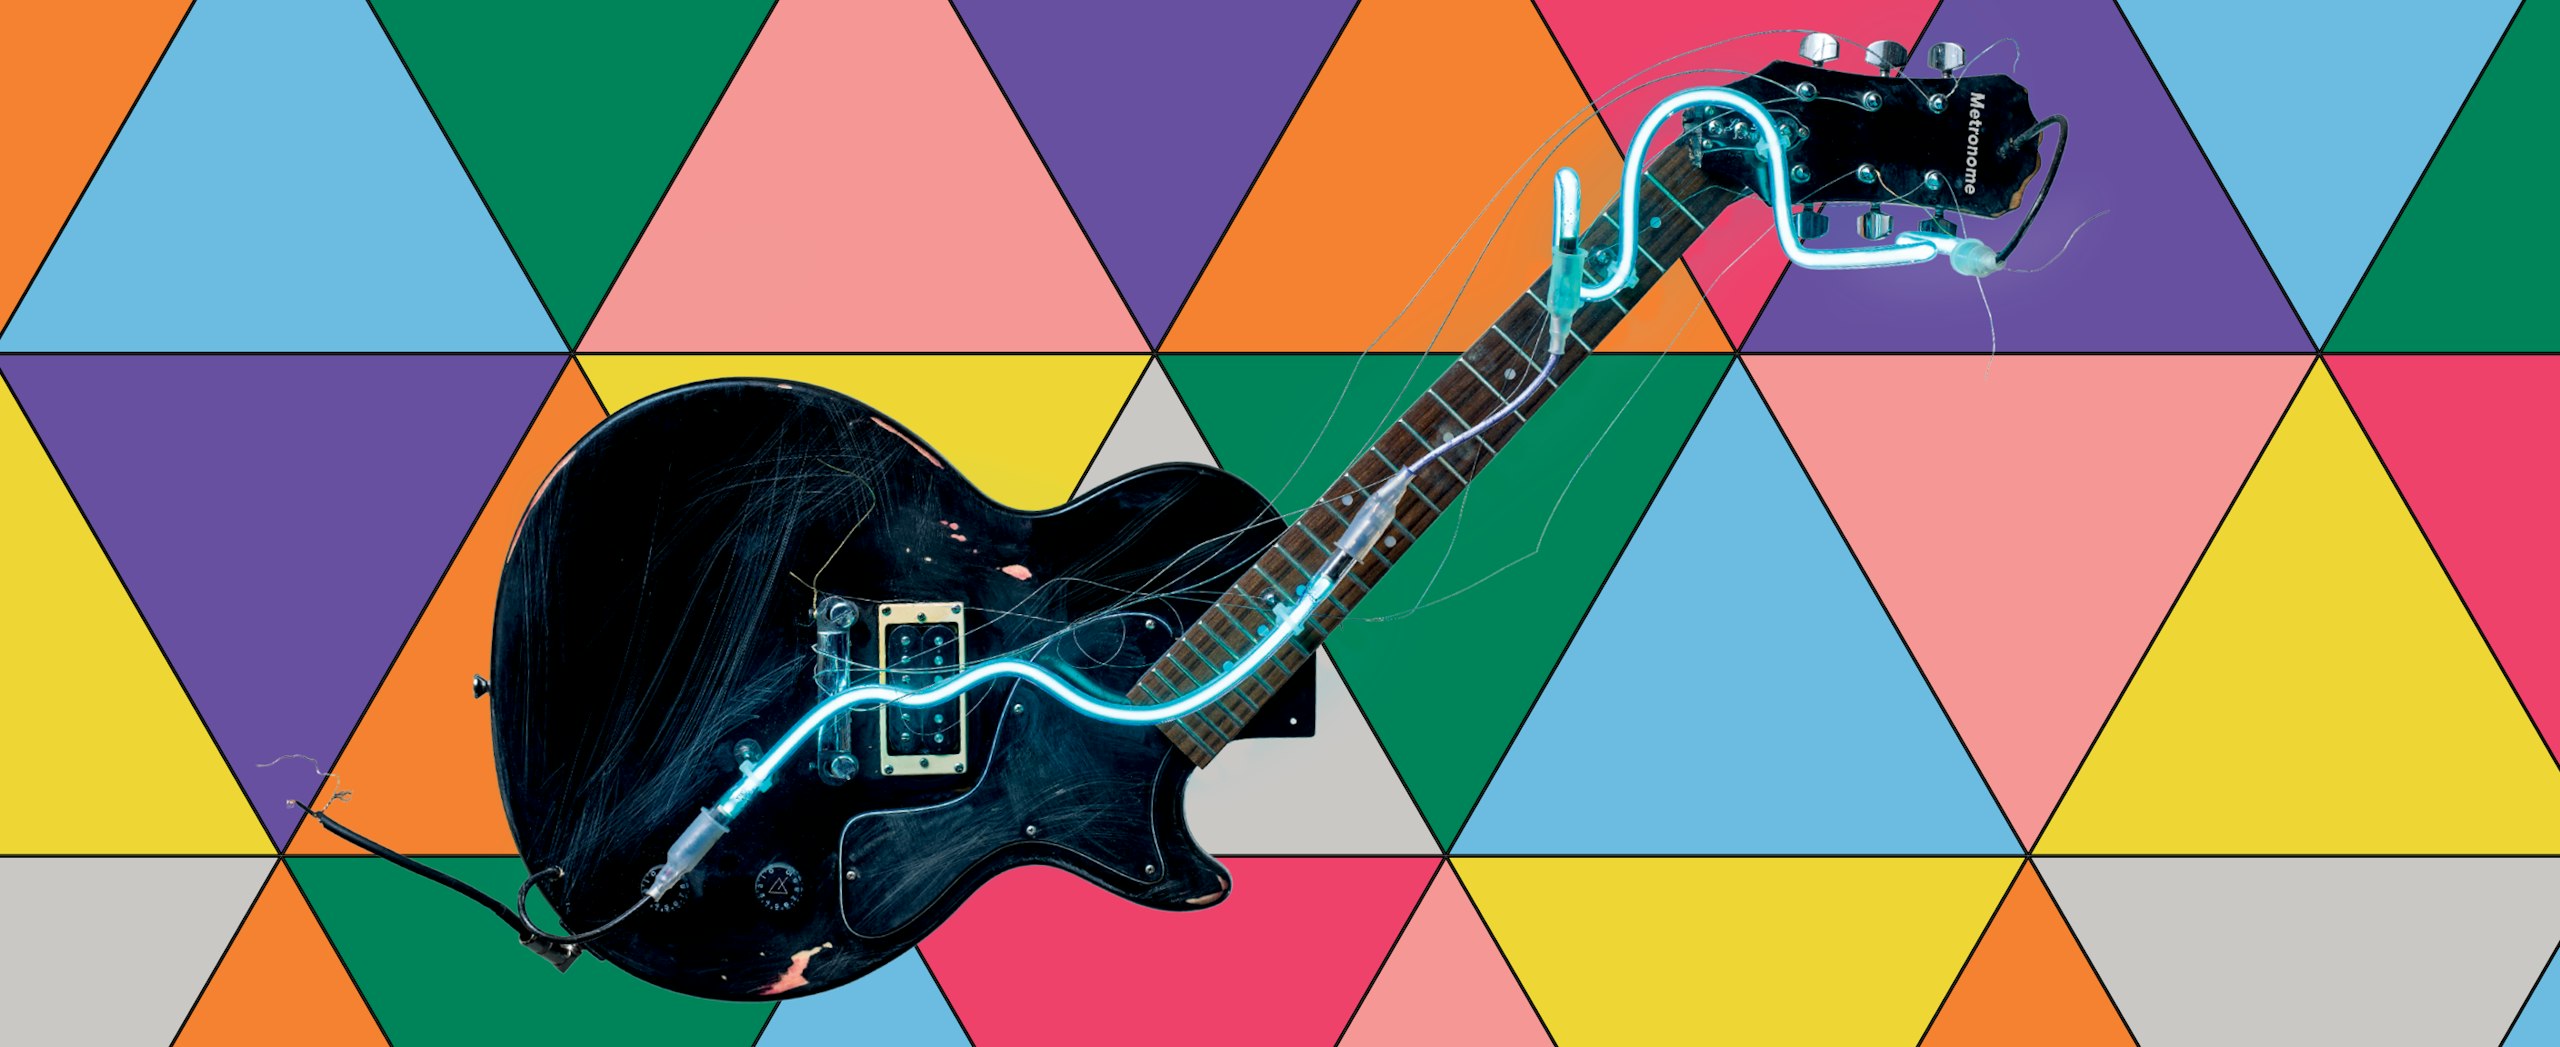 Dekonstruovaná kytara sochaře Michala Cimaly, která je hlavním prvkem nového designu festivalu Metronome